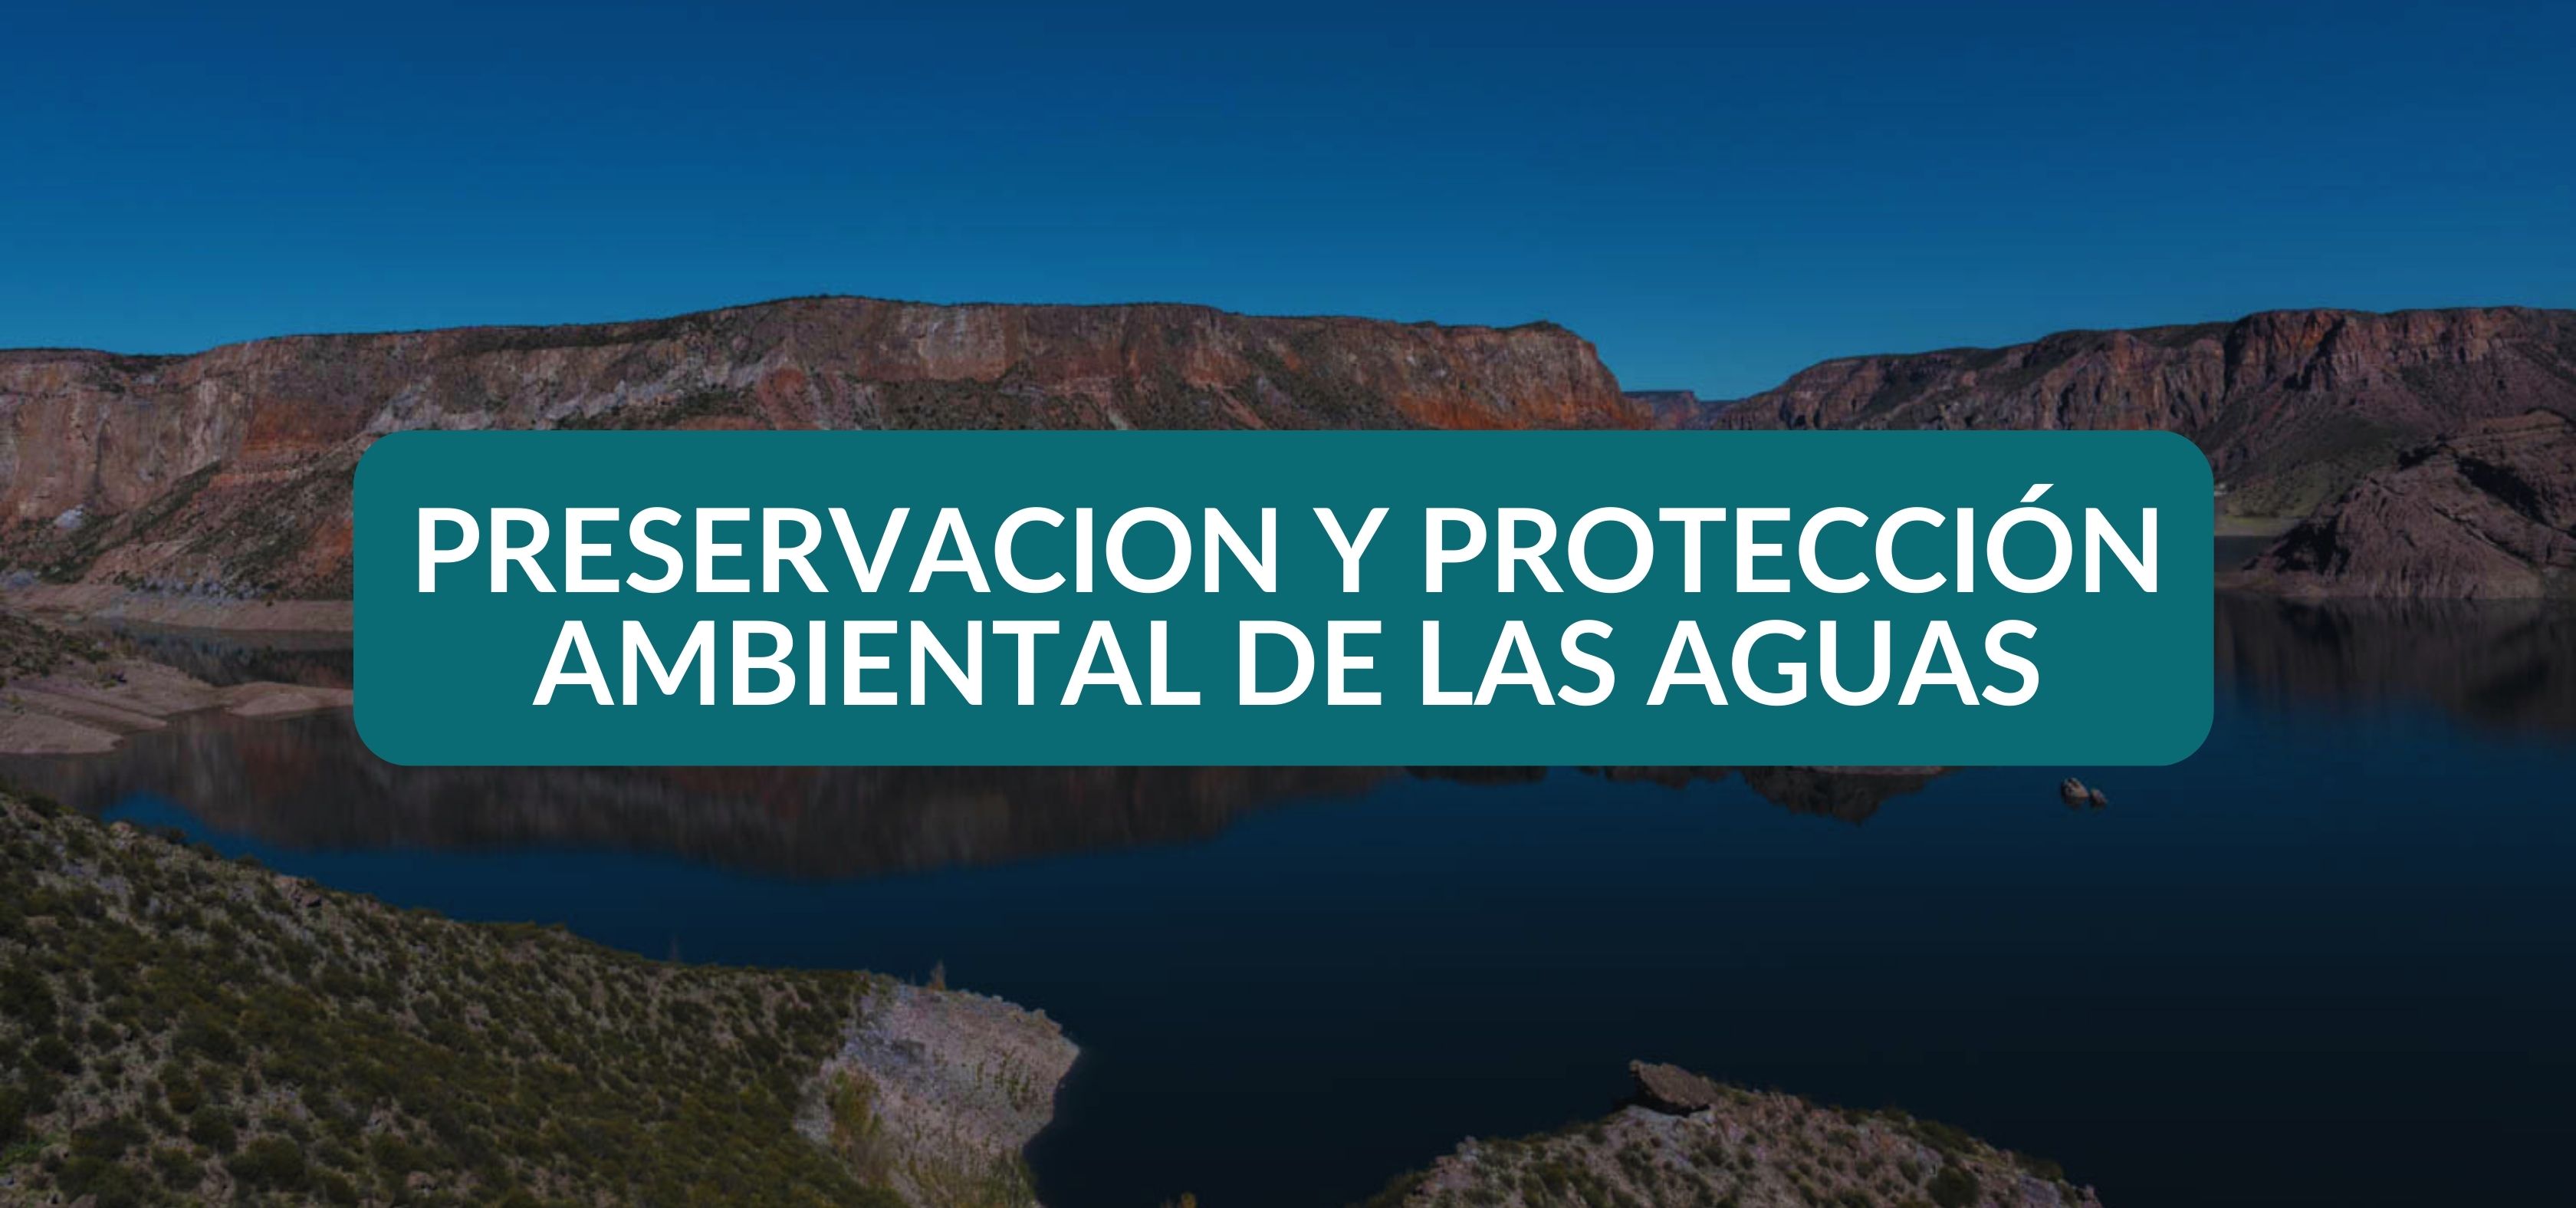 Título III. Preservación y protección ambiental de las aguas